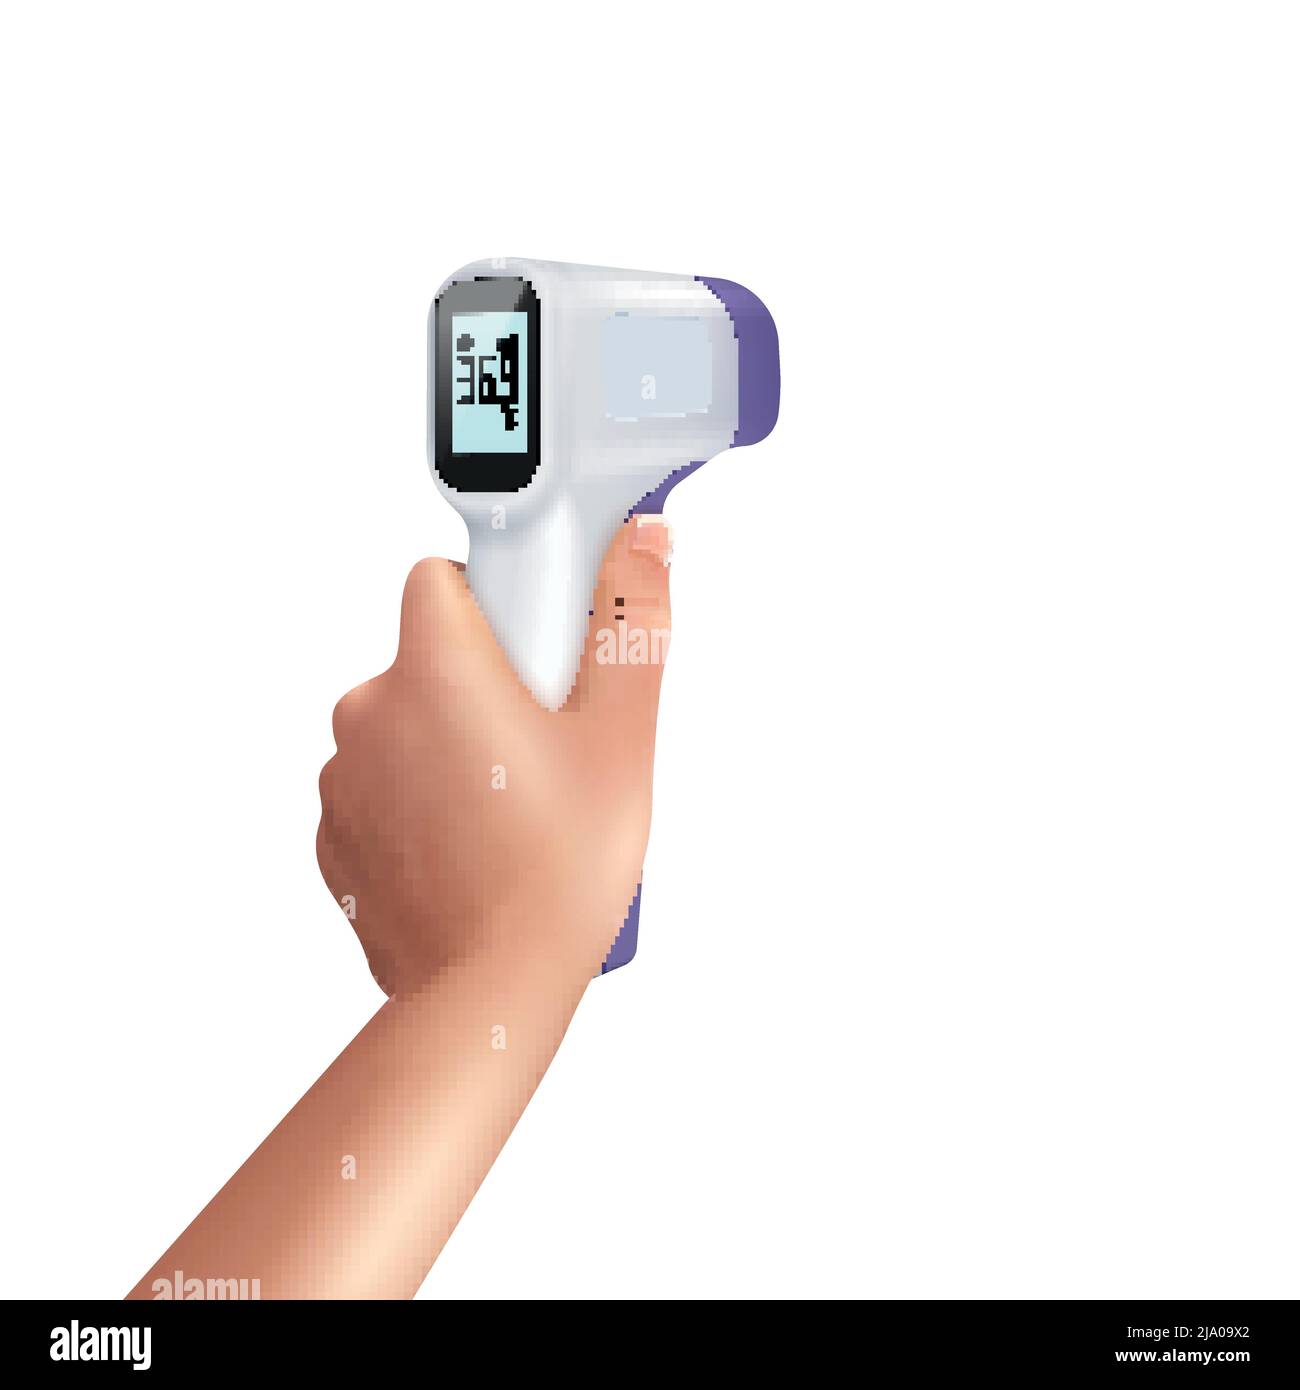 Infrarot-Thermometer in der Hand realistische Zusammensetzung mit isoliertem Bild von menschlicher Hand halten berührungslose Thermometer Vektor-Illustration Stock Vektor